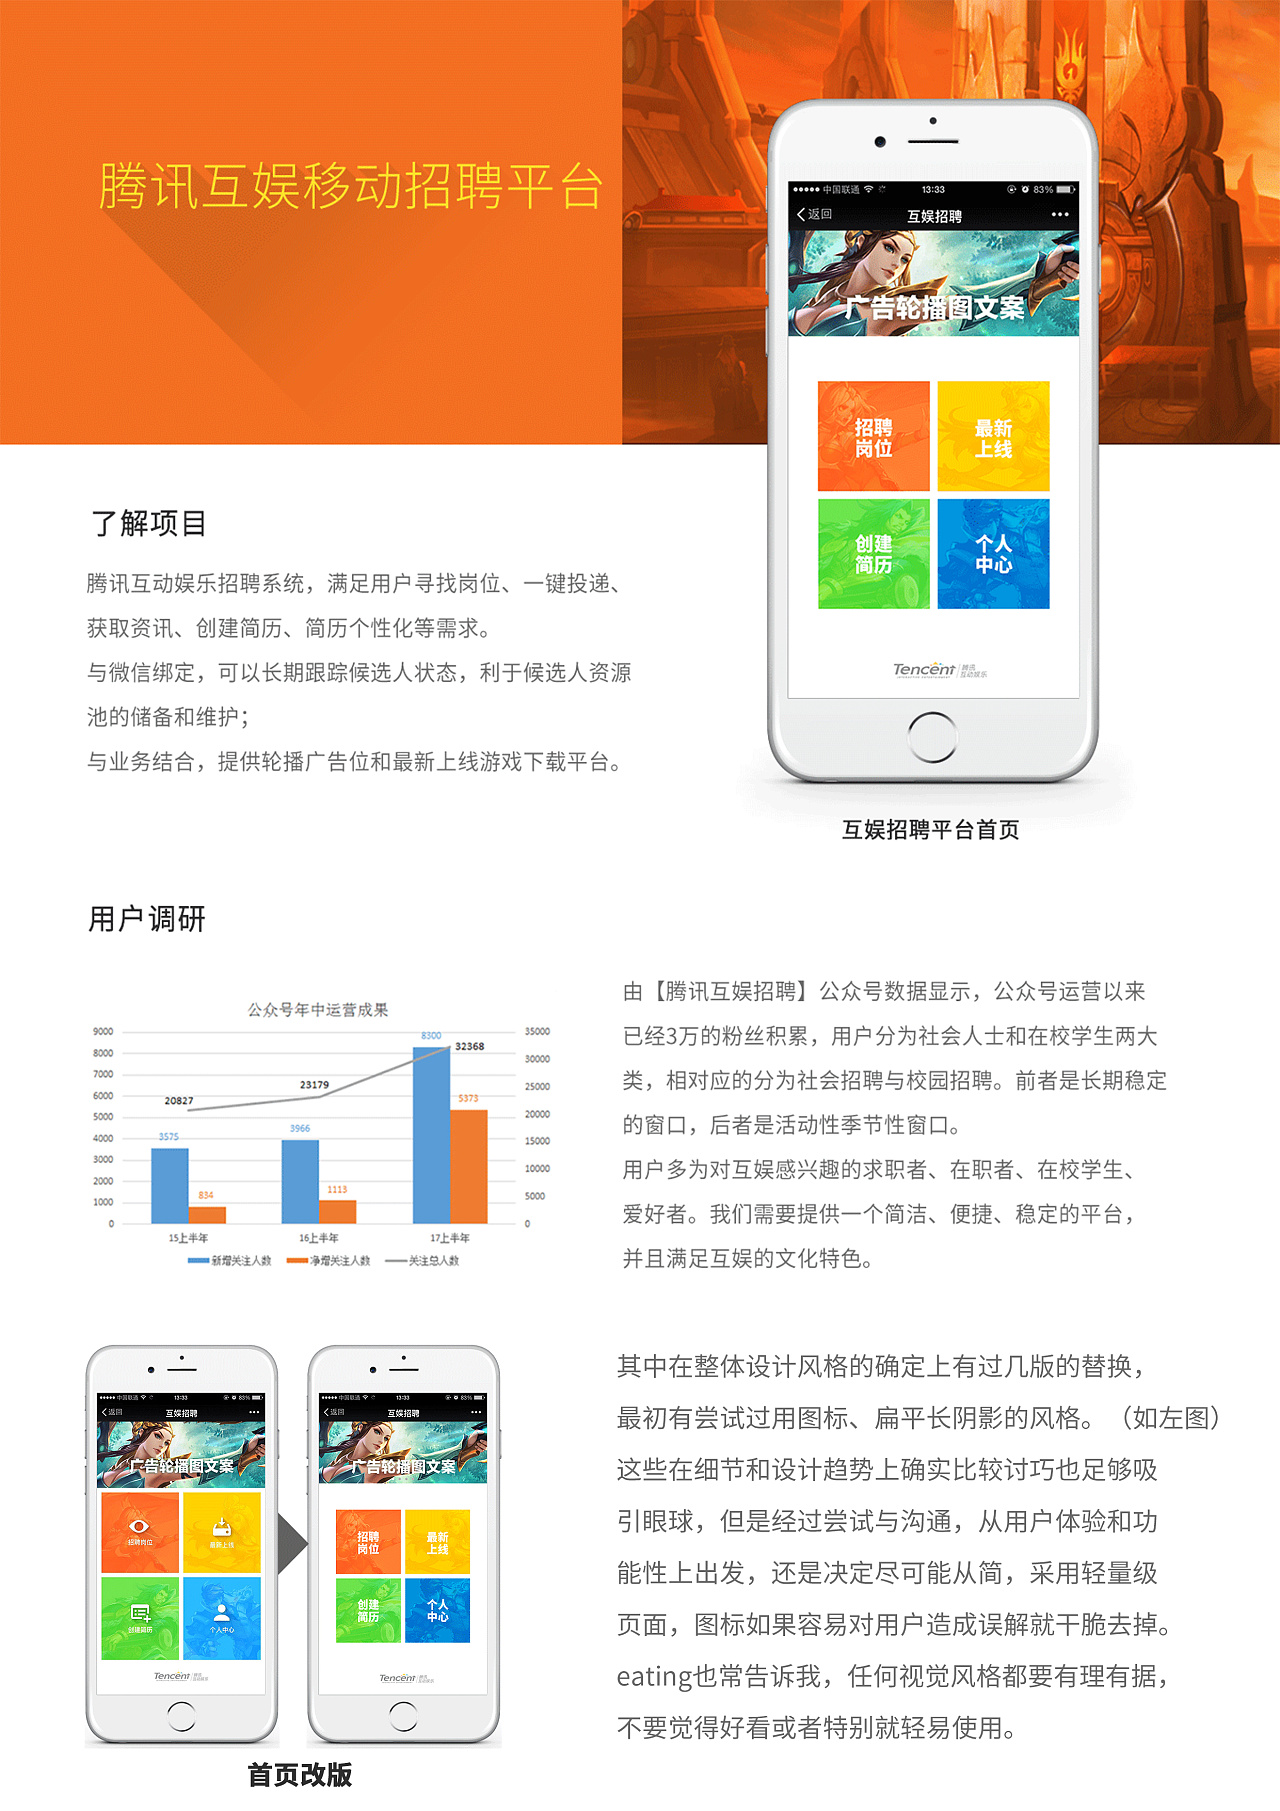 【mobile web】腾讯互娱招聘3.0版